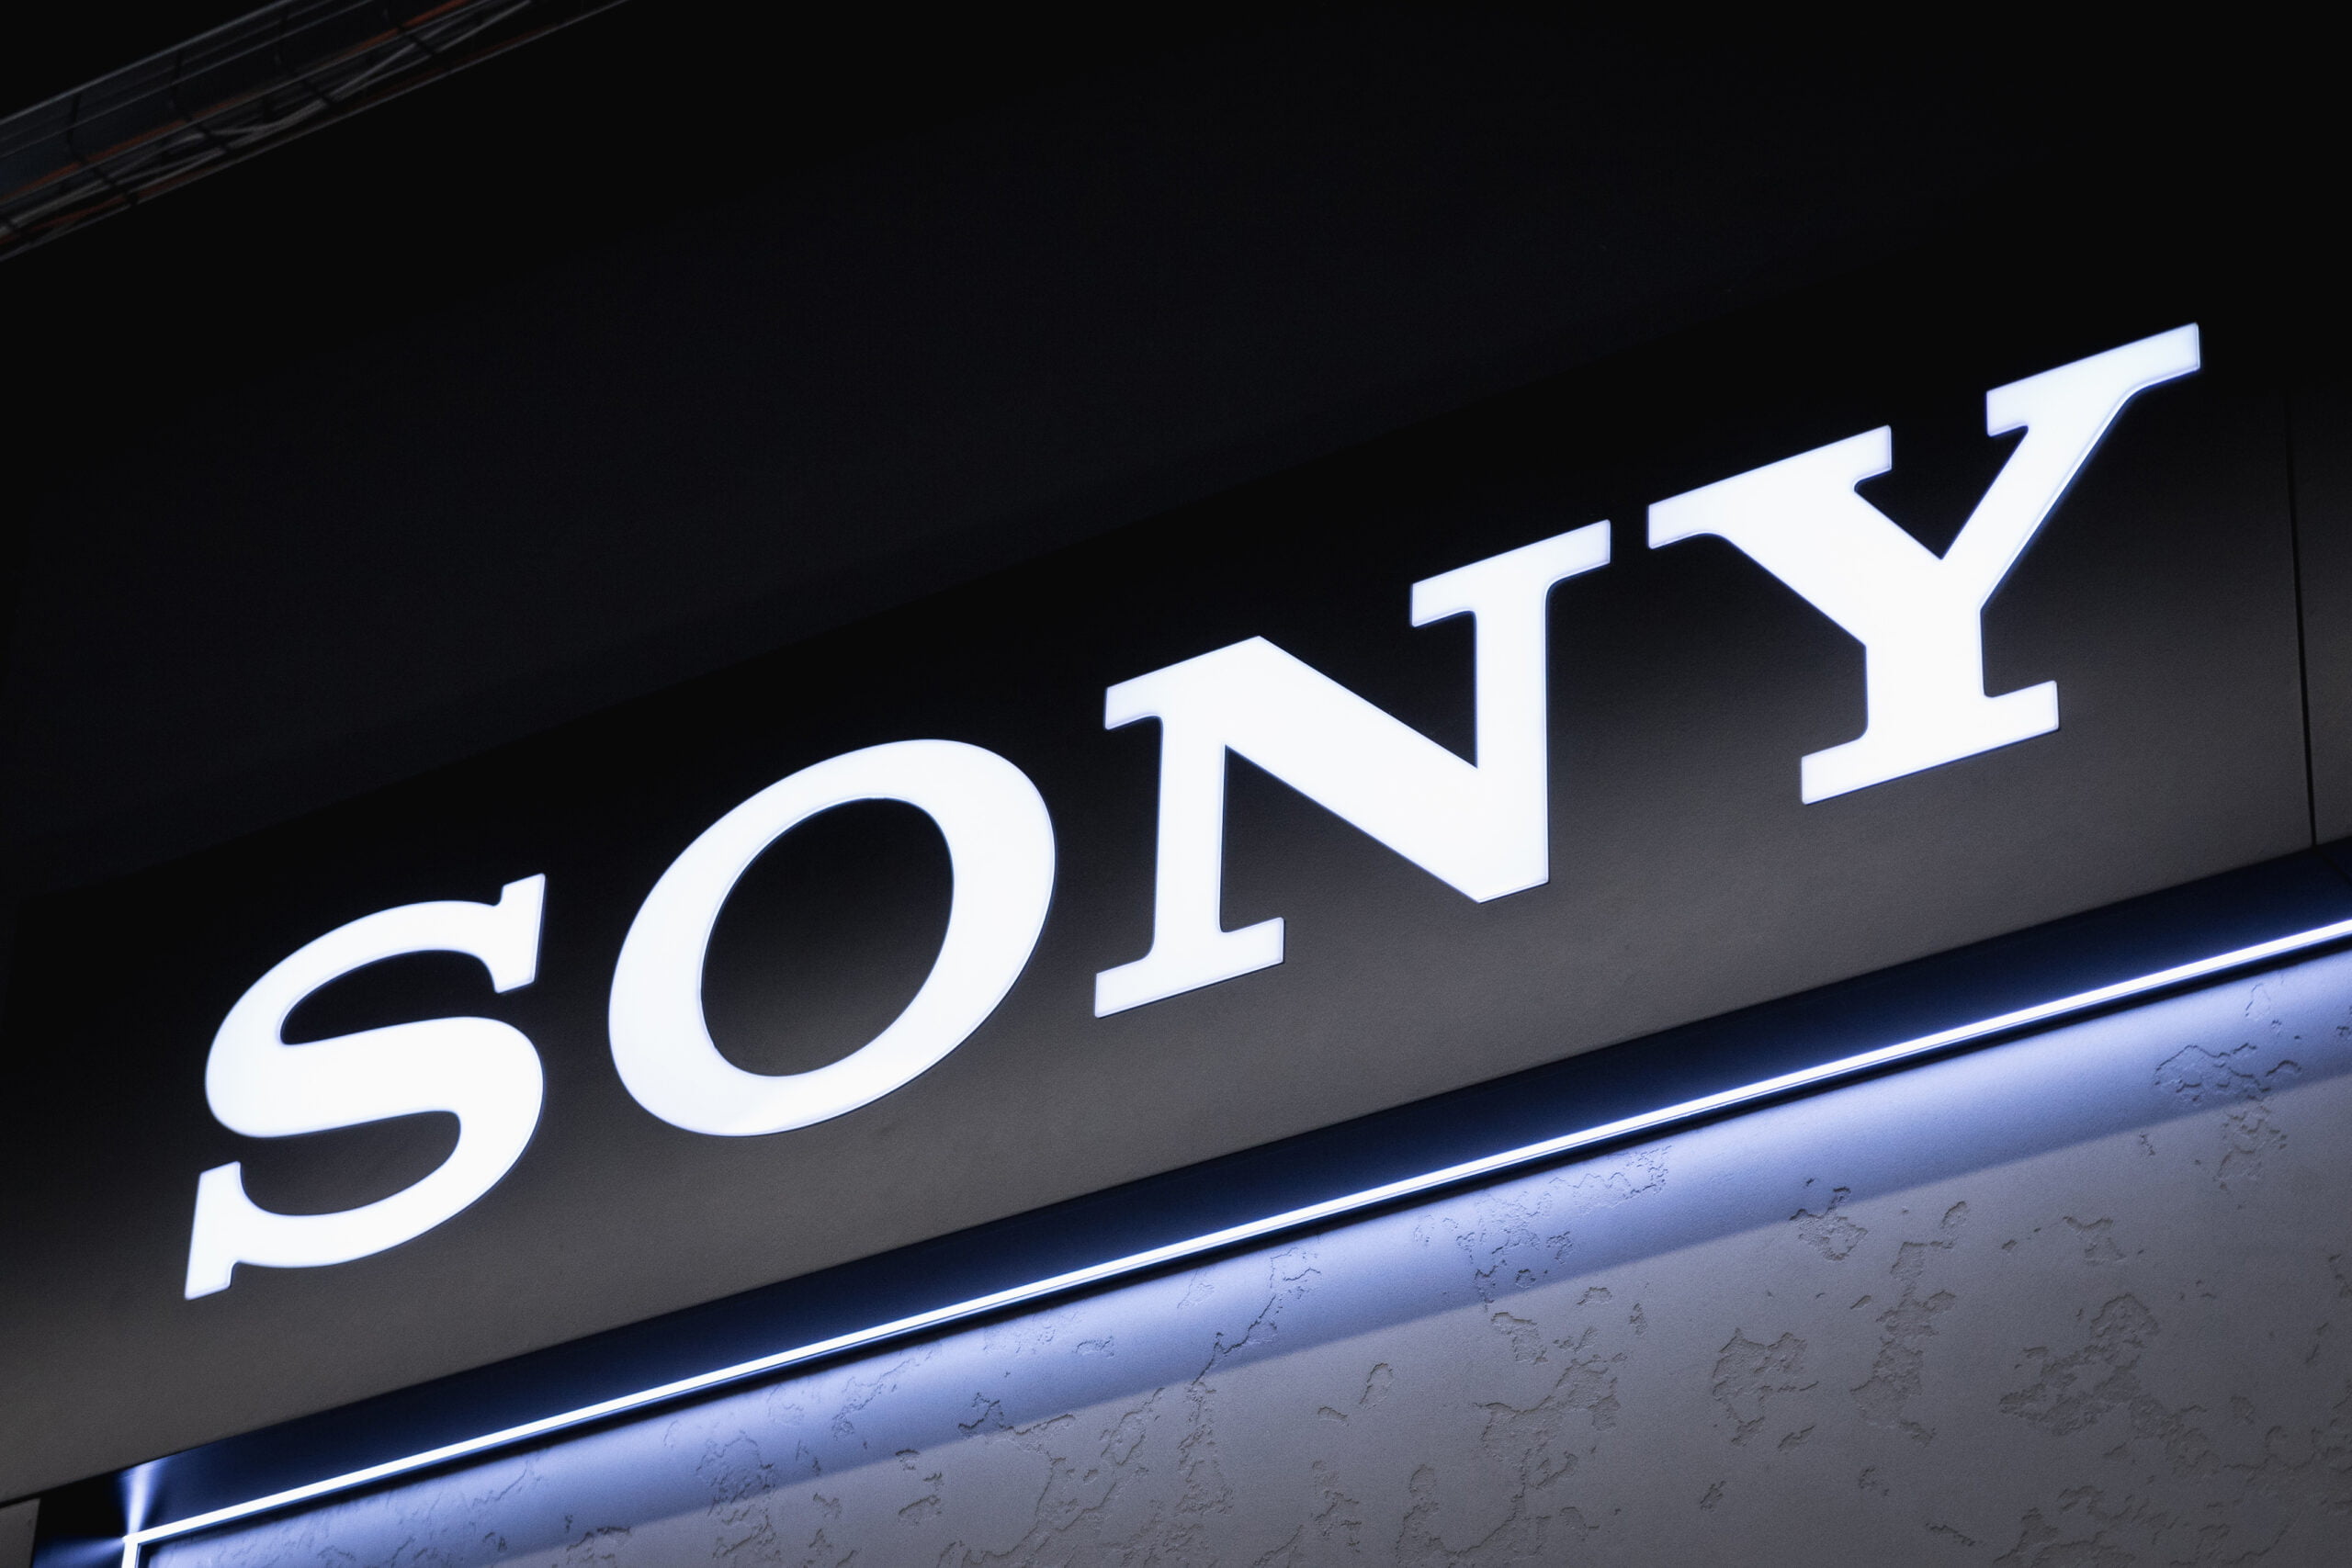 Świecący logotyp Sony na budynku, zdjęcie wykonane w nocy